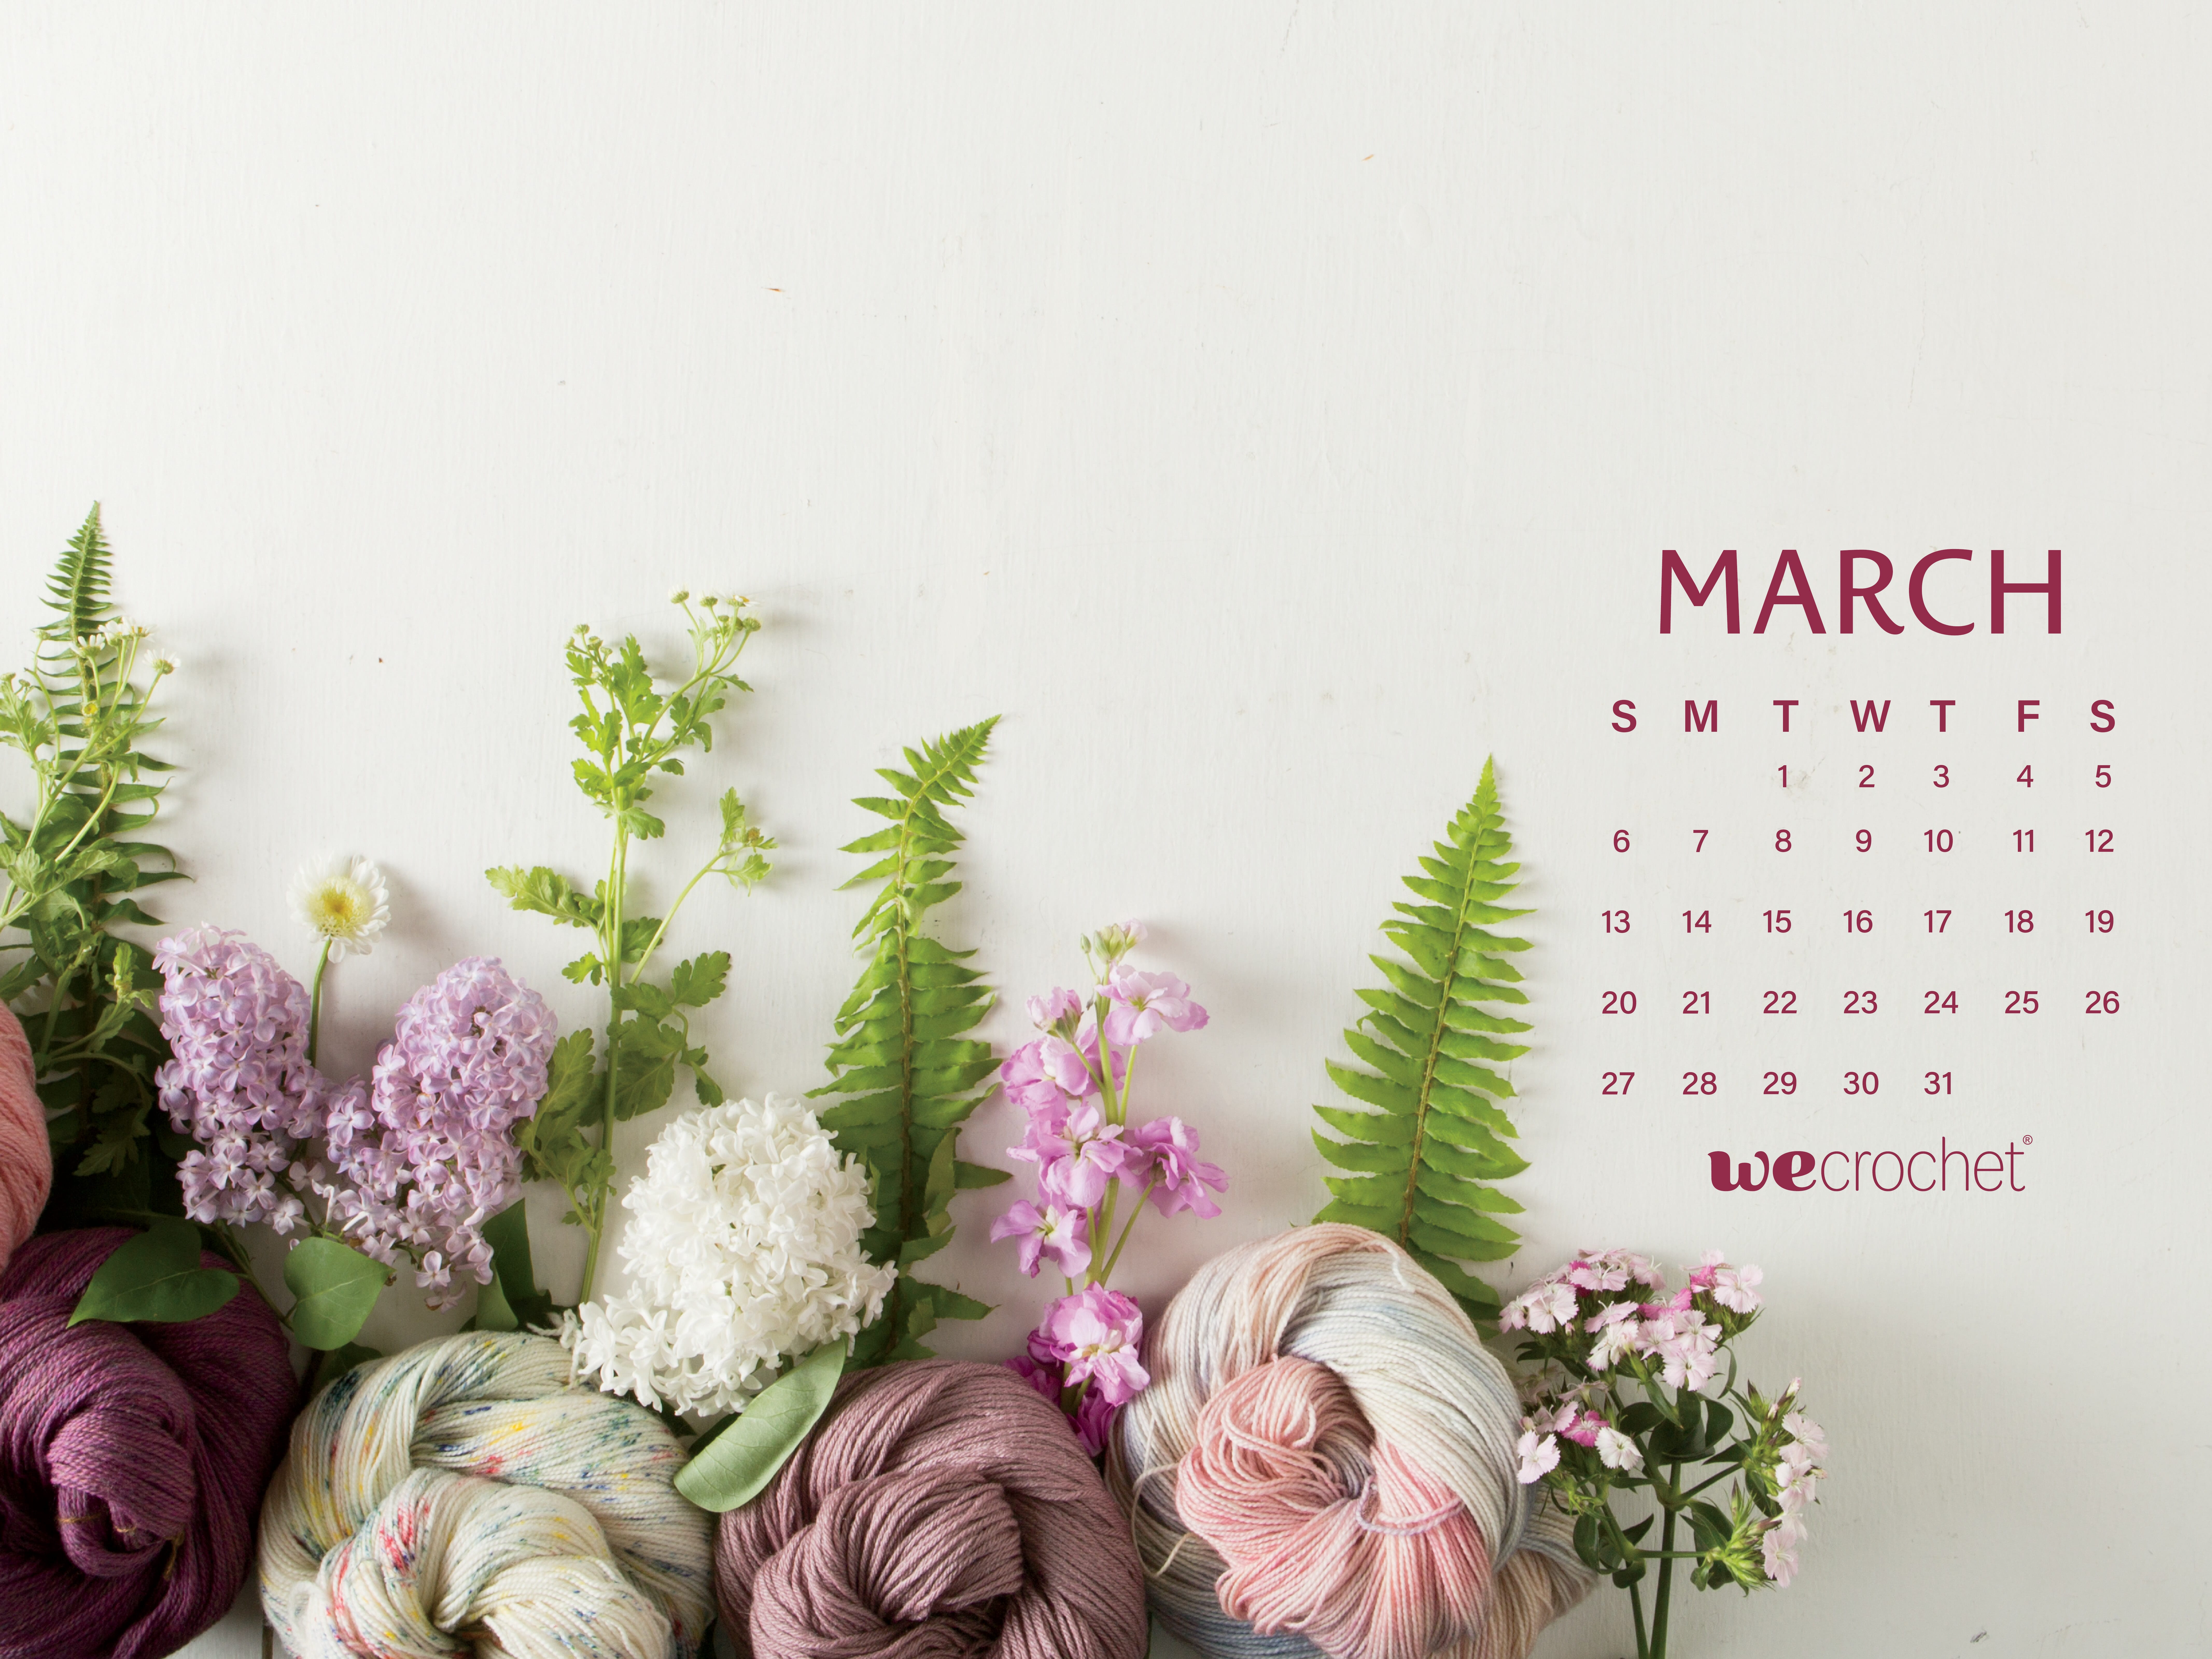 March 2022 Calendar Wallpaper Free Download: March 2022 Calendar Wallpaper - Wecrochet Staff Blog